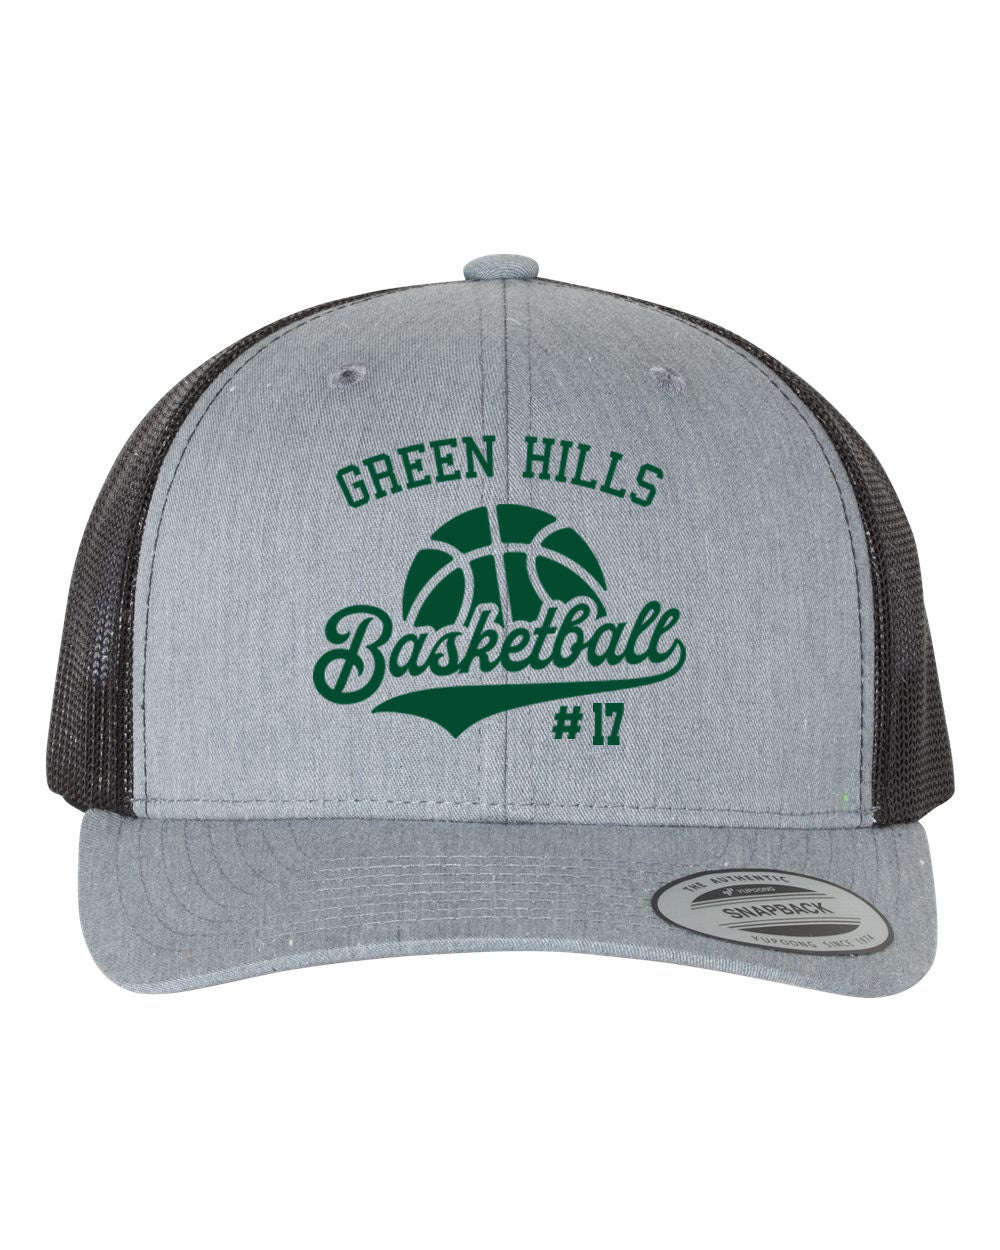 Green Hills Basketball Design 6 Trucker Hat